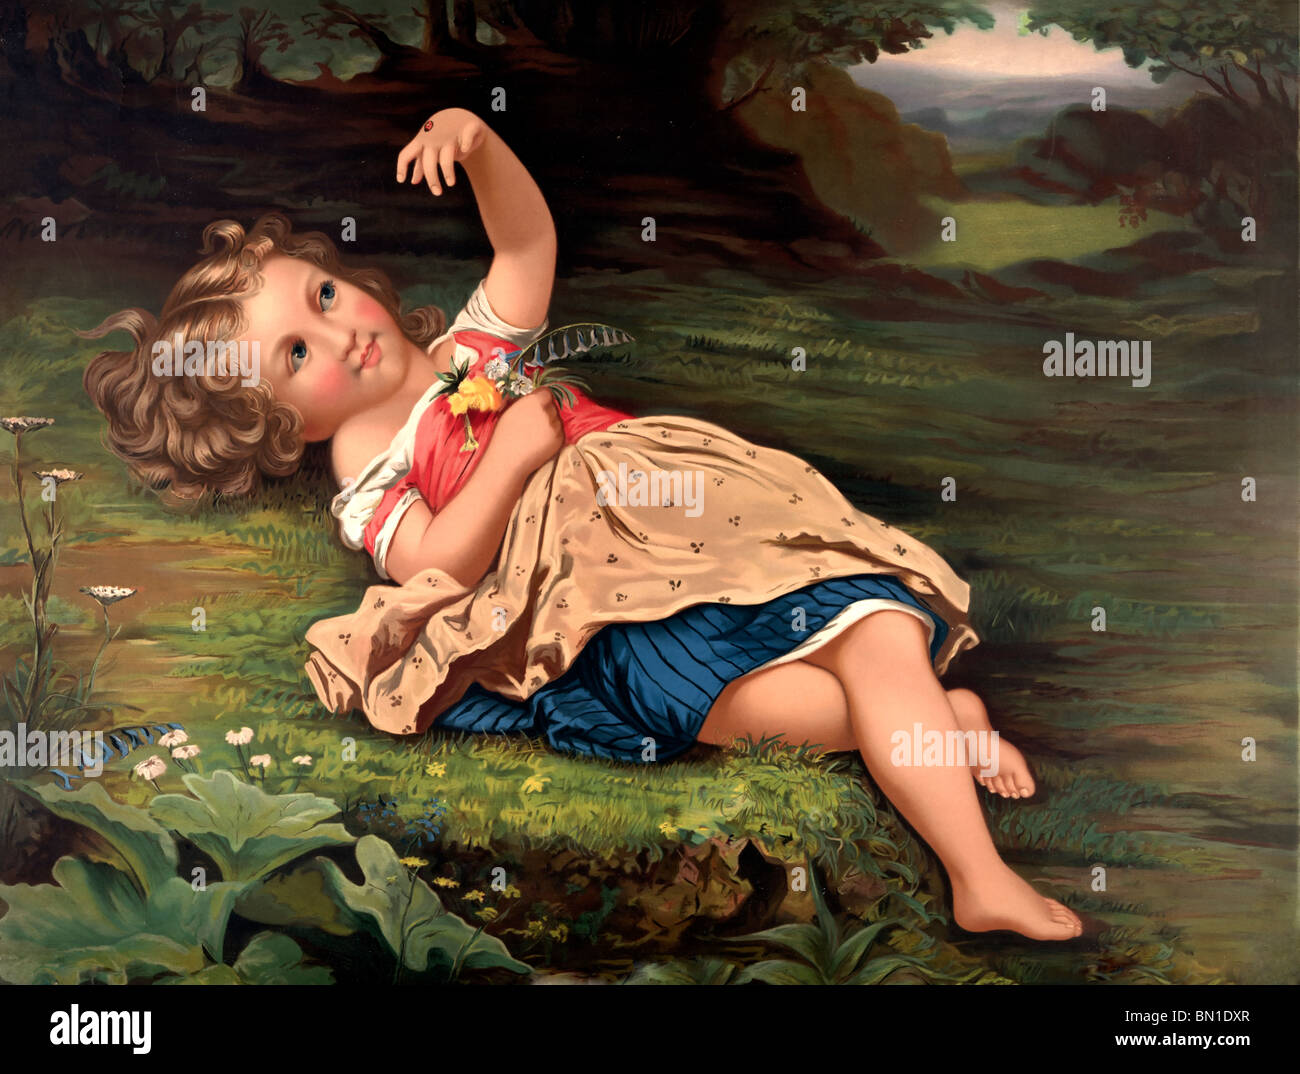 Marienkäfer, Marienkäfer, wegfliegen! Junges Mädchen auf Boden liegend mit Marienkäfer auf ihrer Hand - 1872 Malerei Stockfoto